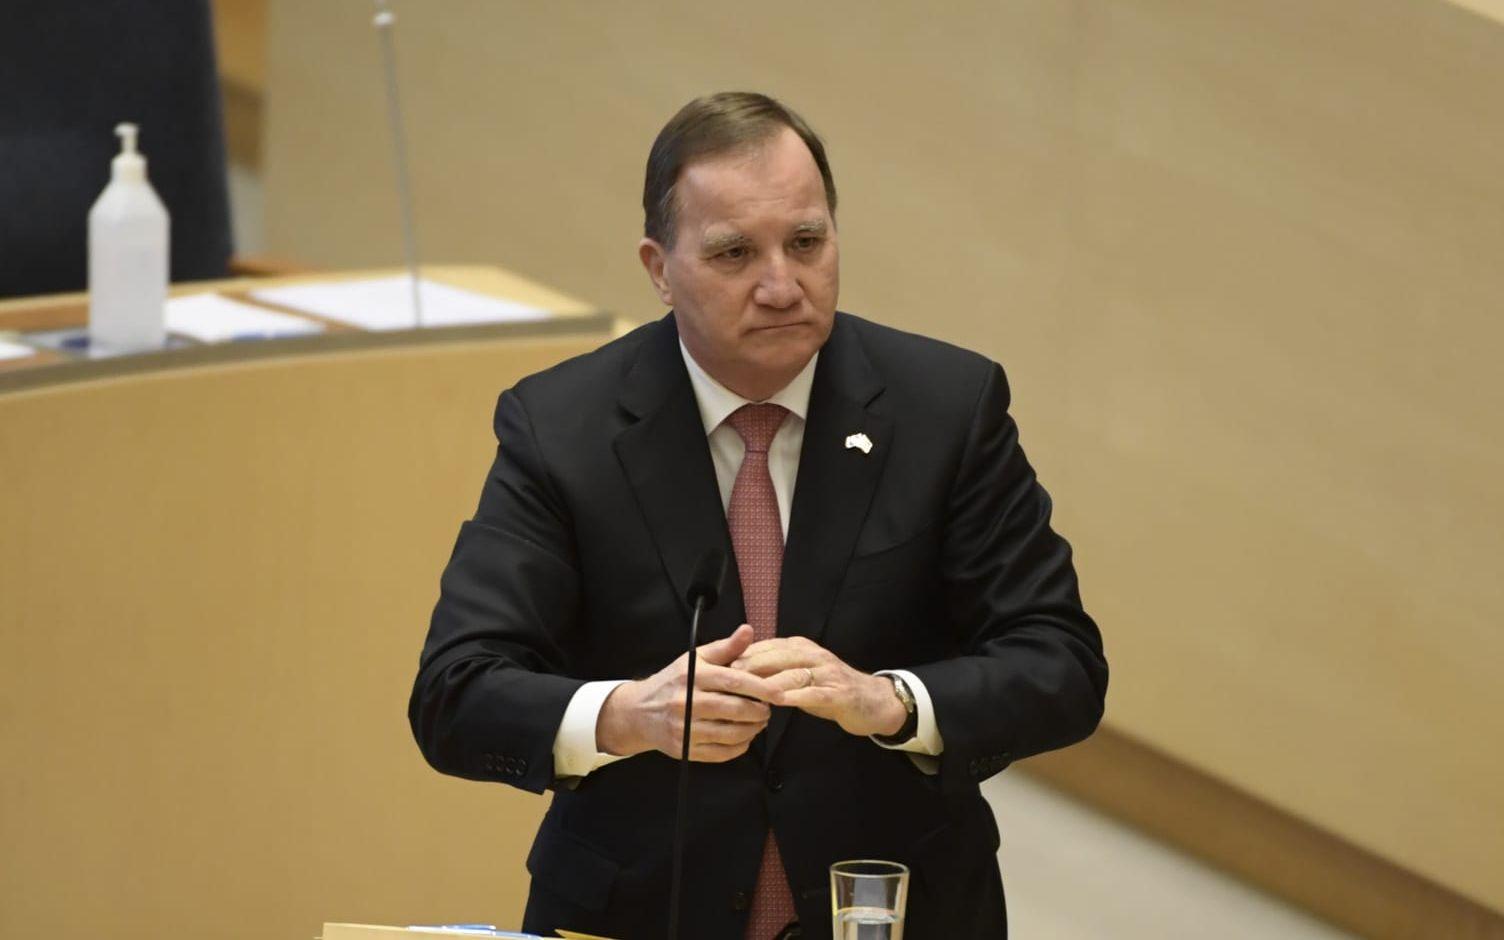 Regeringen tillsätter en krisgrupp mot mäns våld mot kvinnor, meddelar statsministern Stefan Löfven (S). 